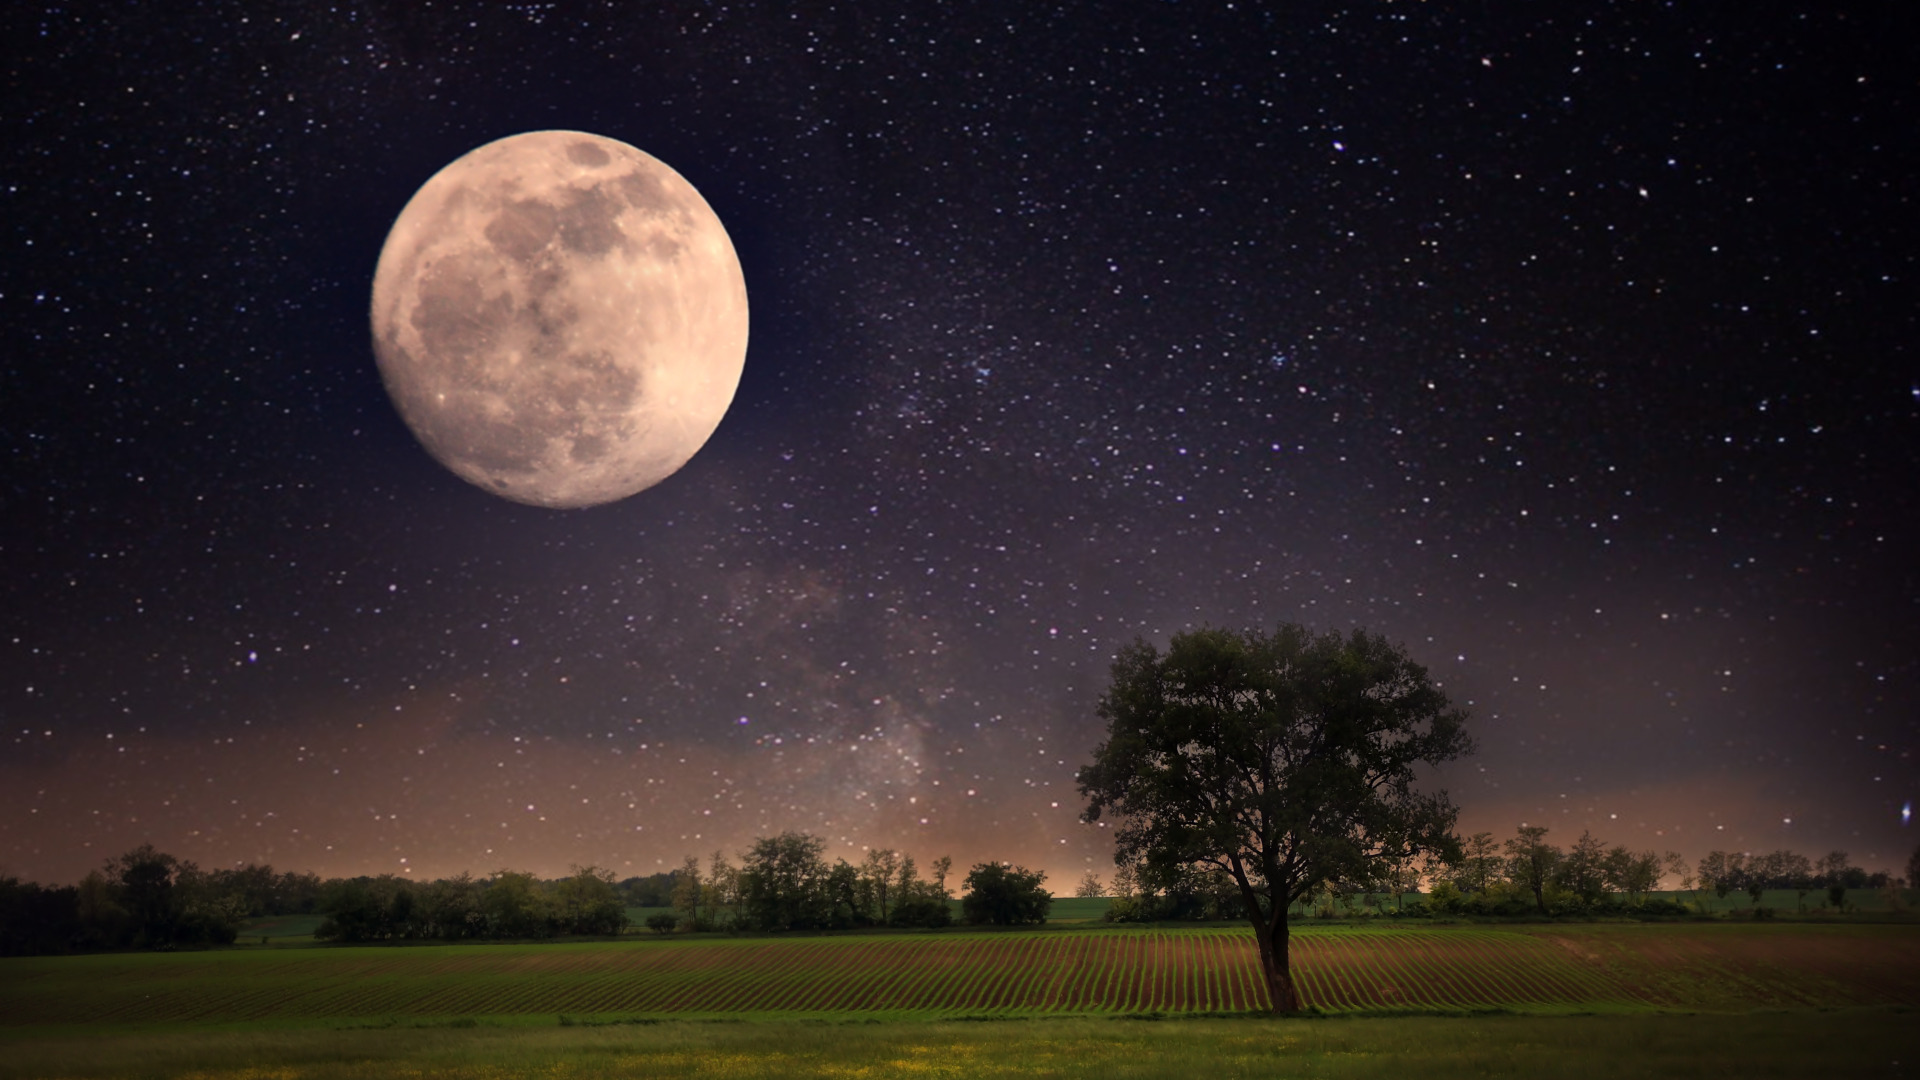 Звёздное небо и космос в картинках - Страница 15 Moon-night-landscape-stars